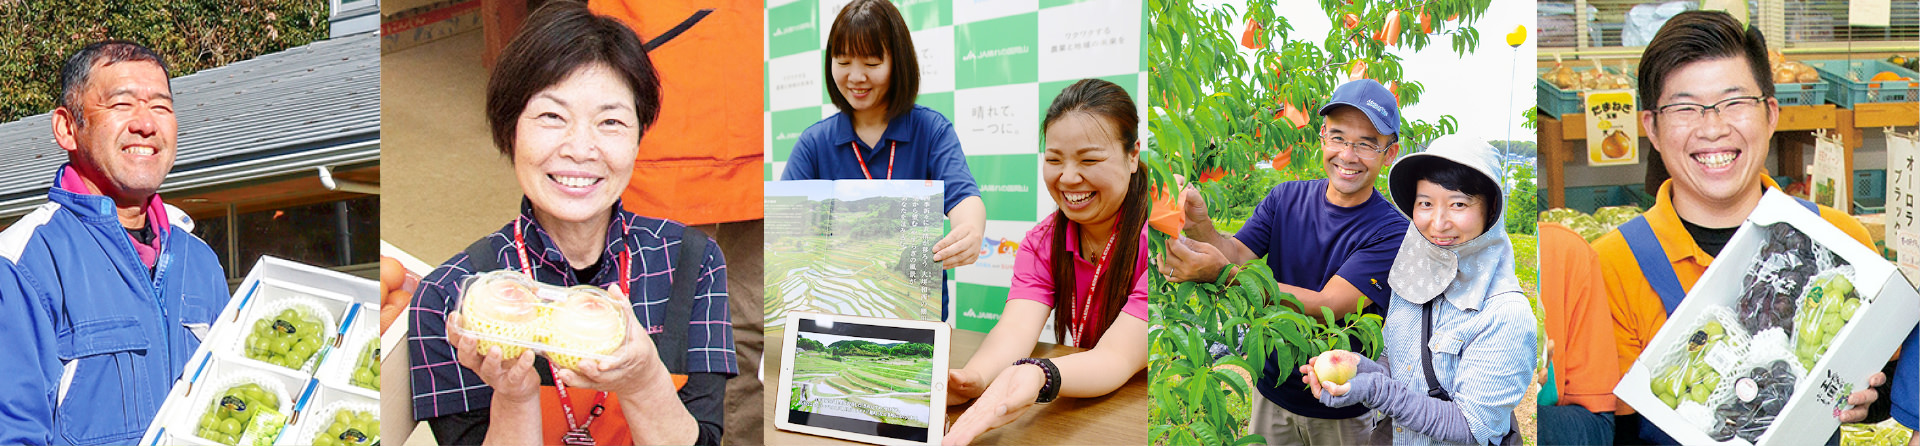 JA晴れの国岡山の生産者や職員の晴ればれ笑顔の写真